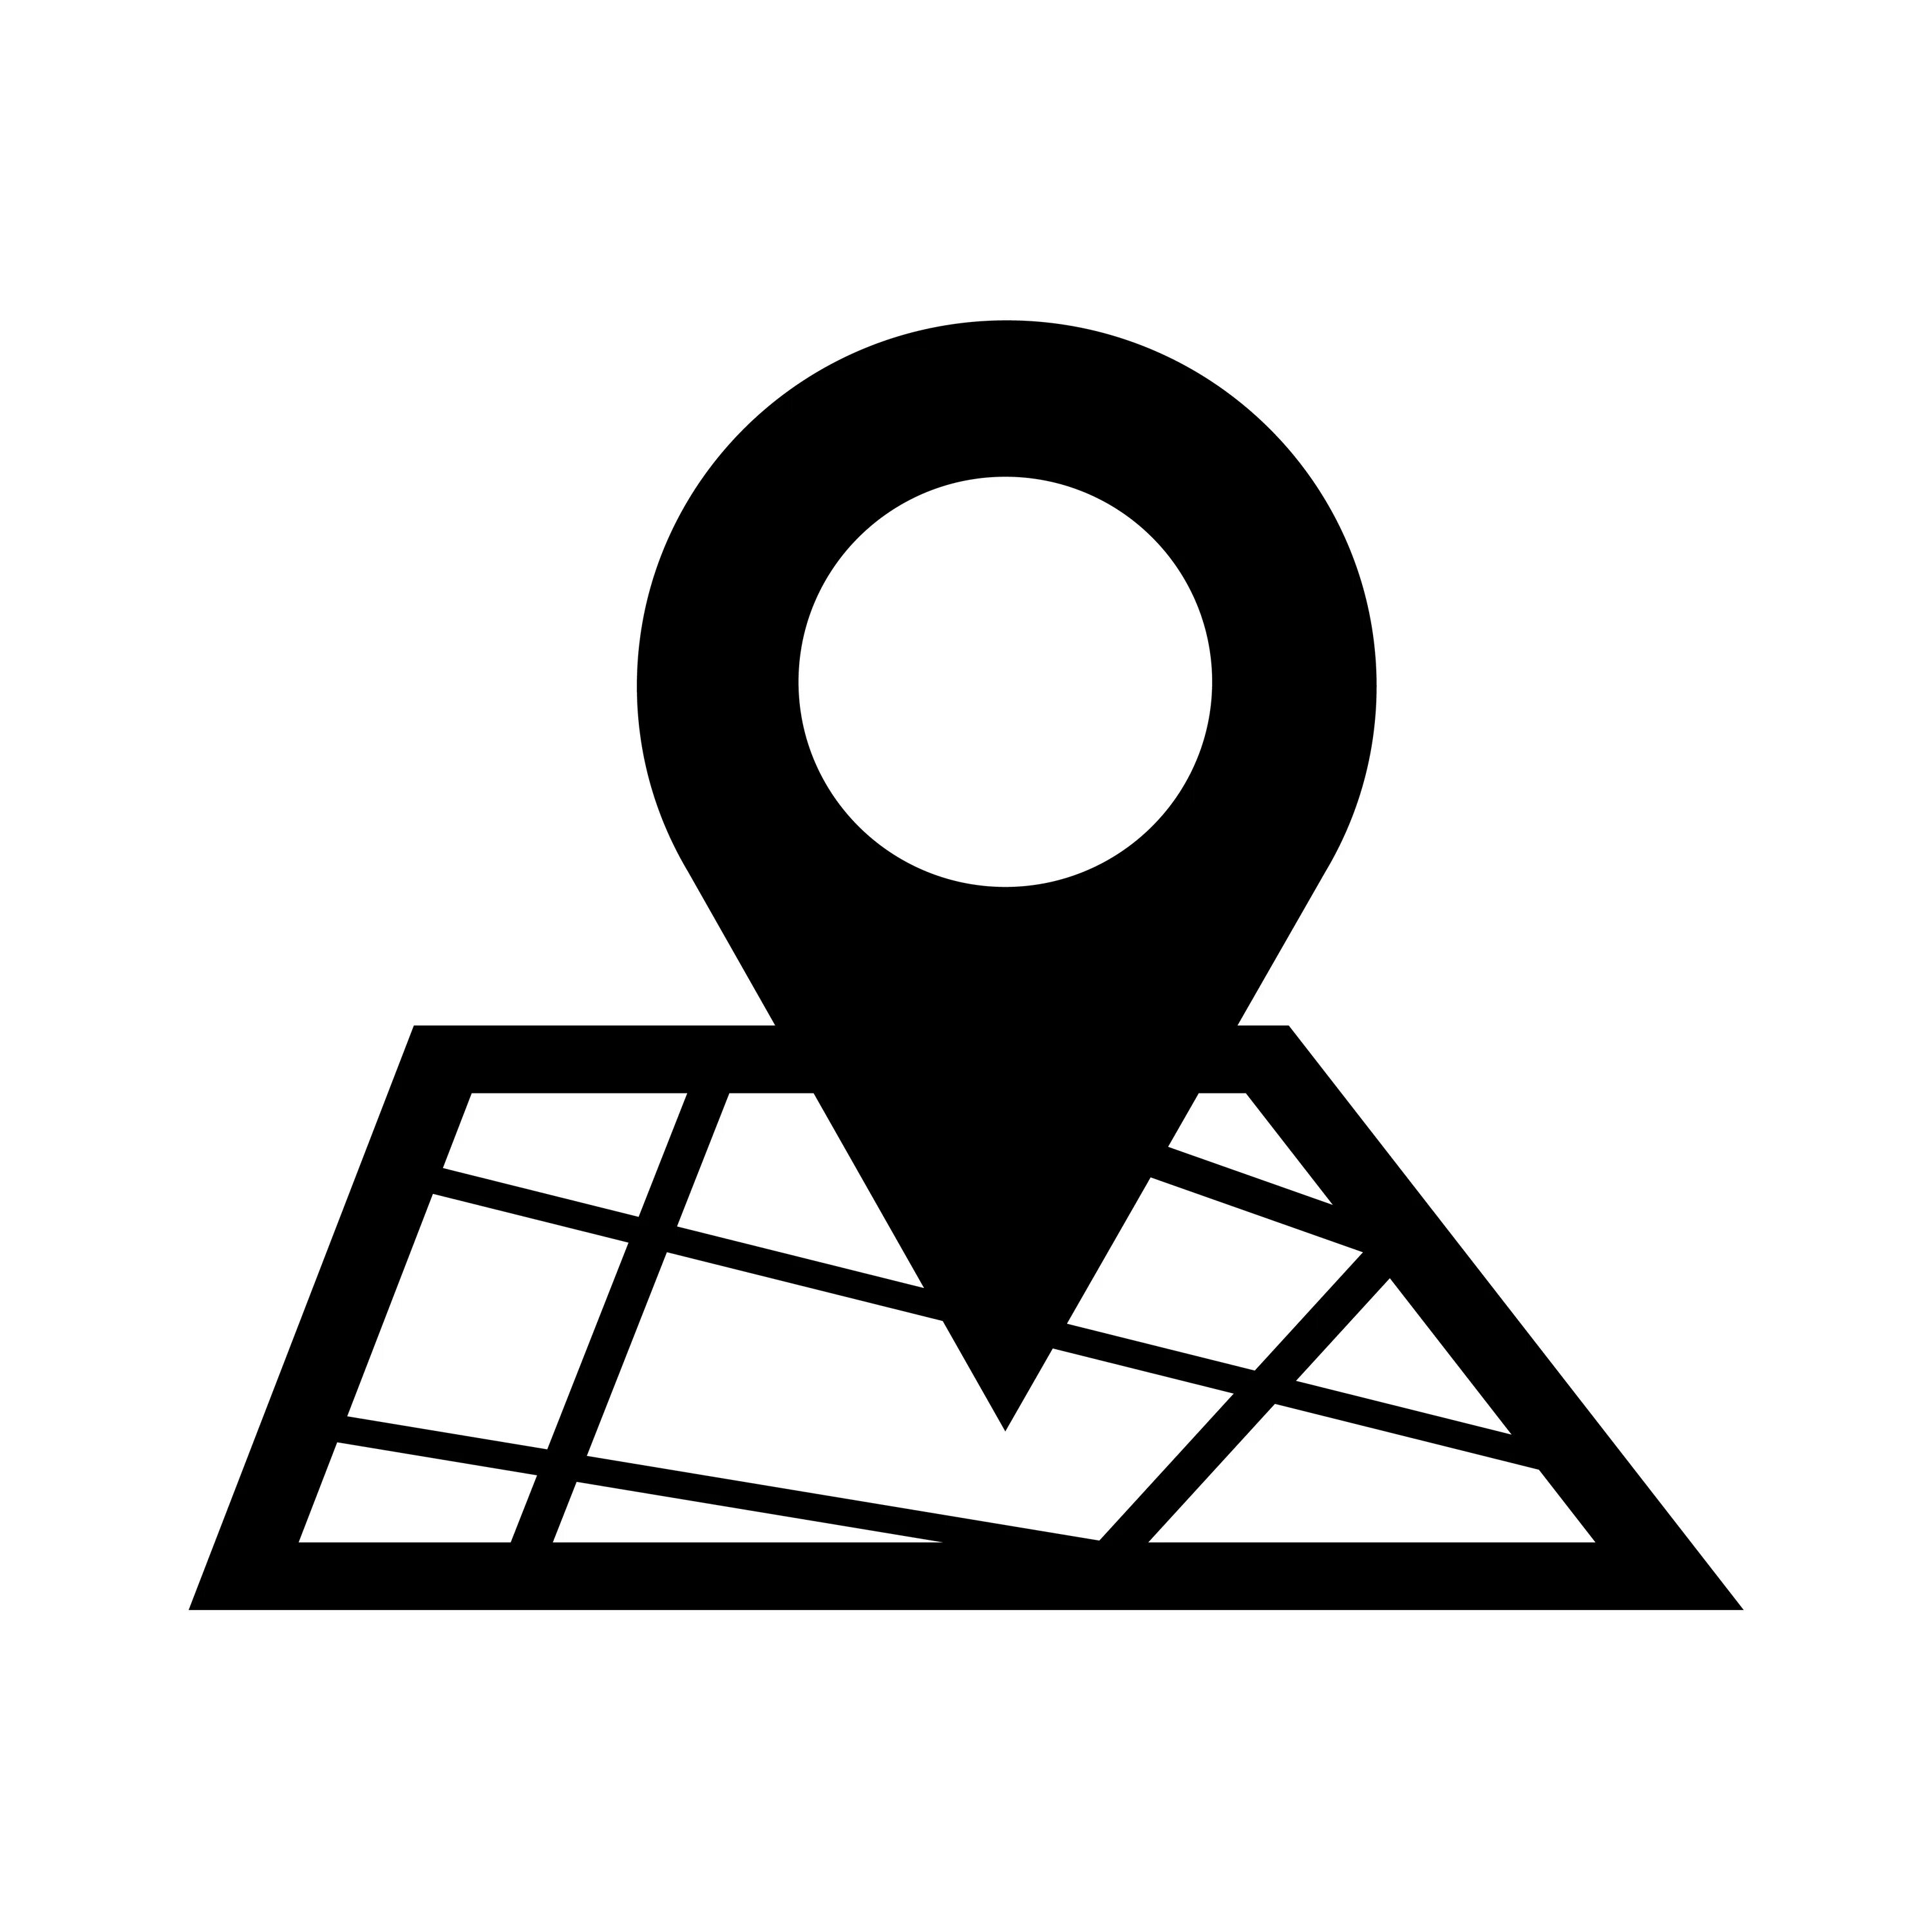 Карта icon. Значок местоположения. Геолокация значок. Локация иконка. Значок местоположения на белом фоне.